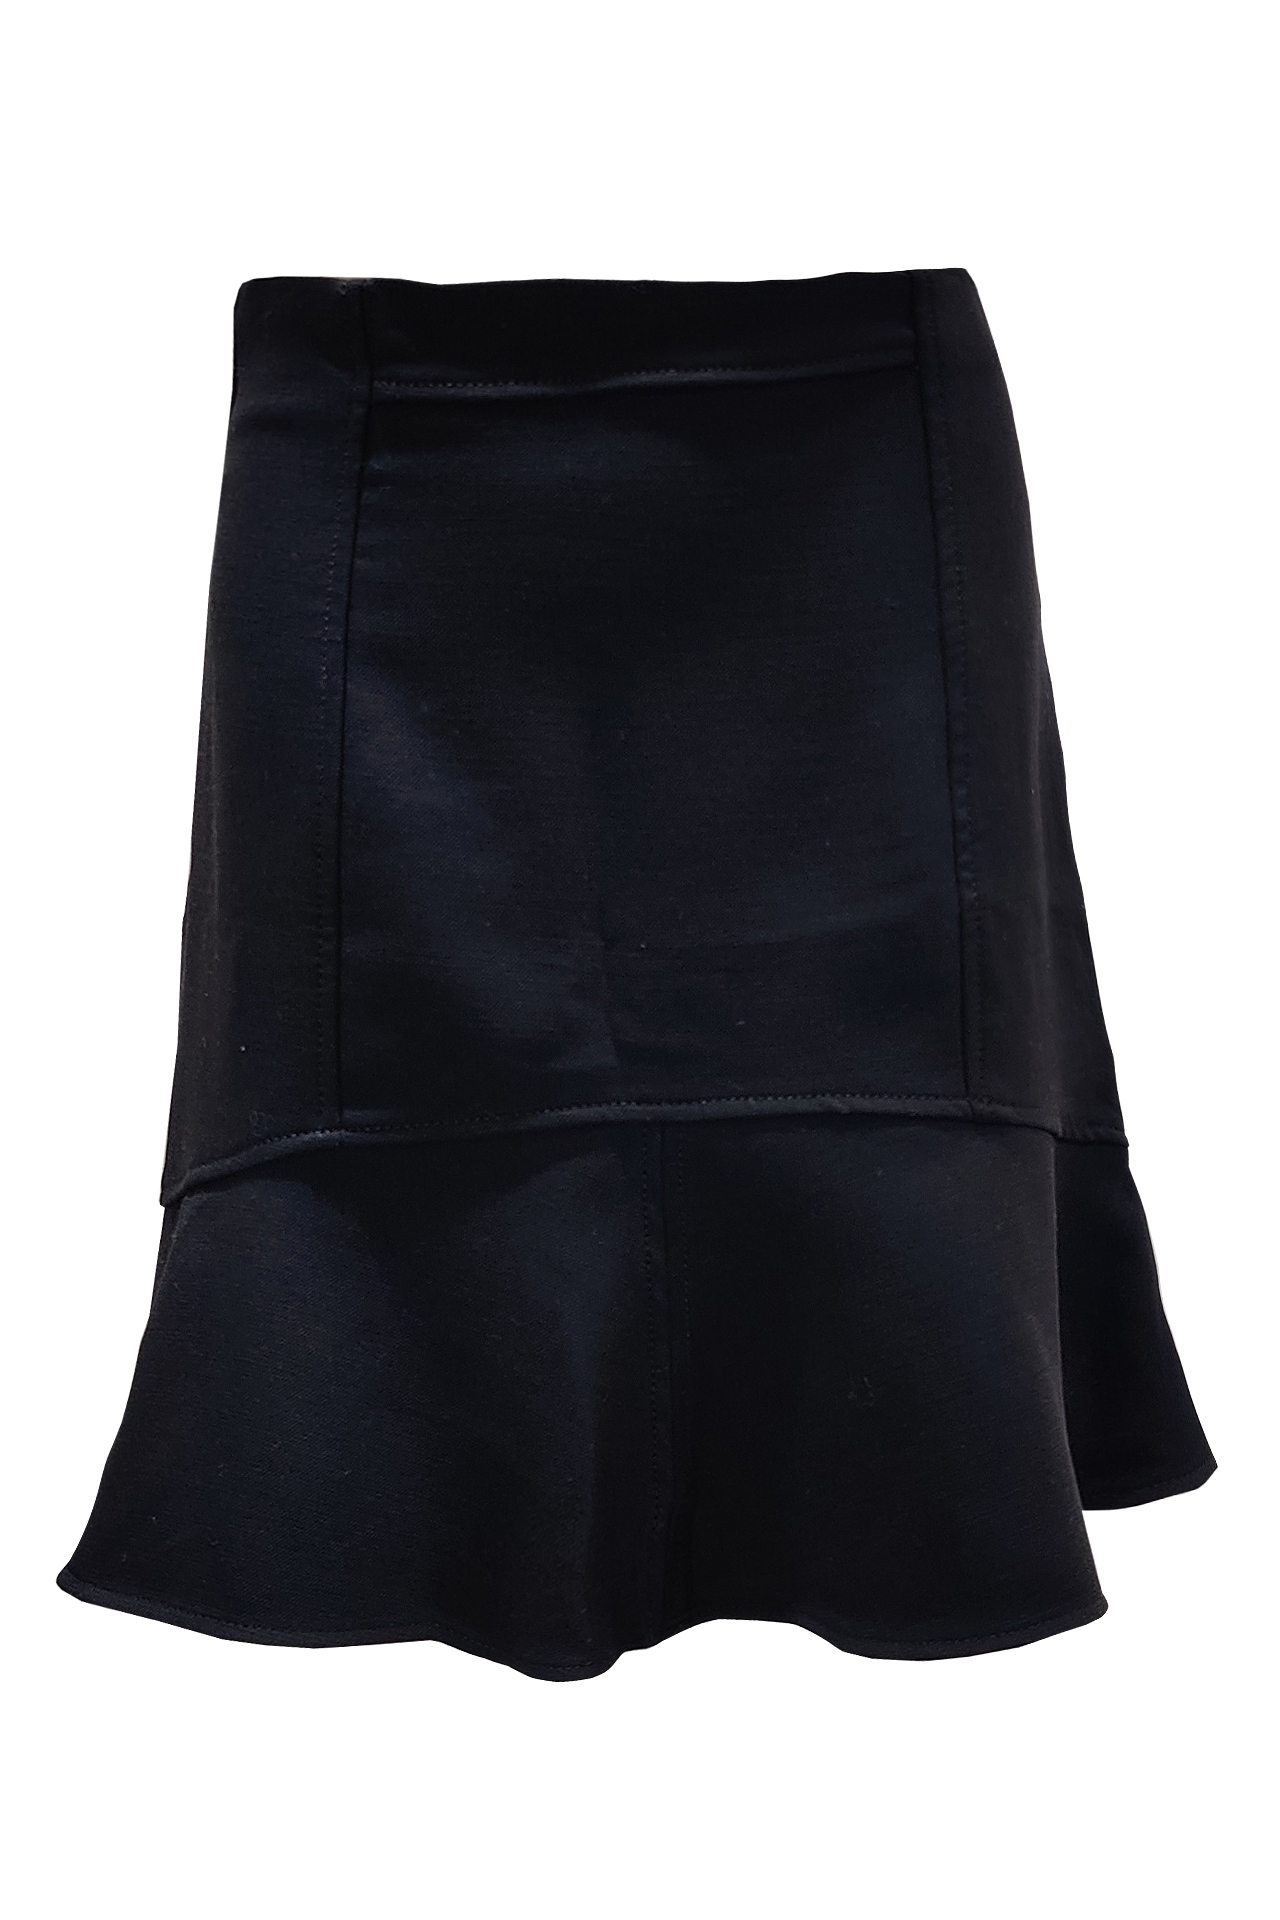 黑色短板魚尾裙子